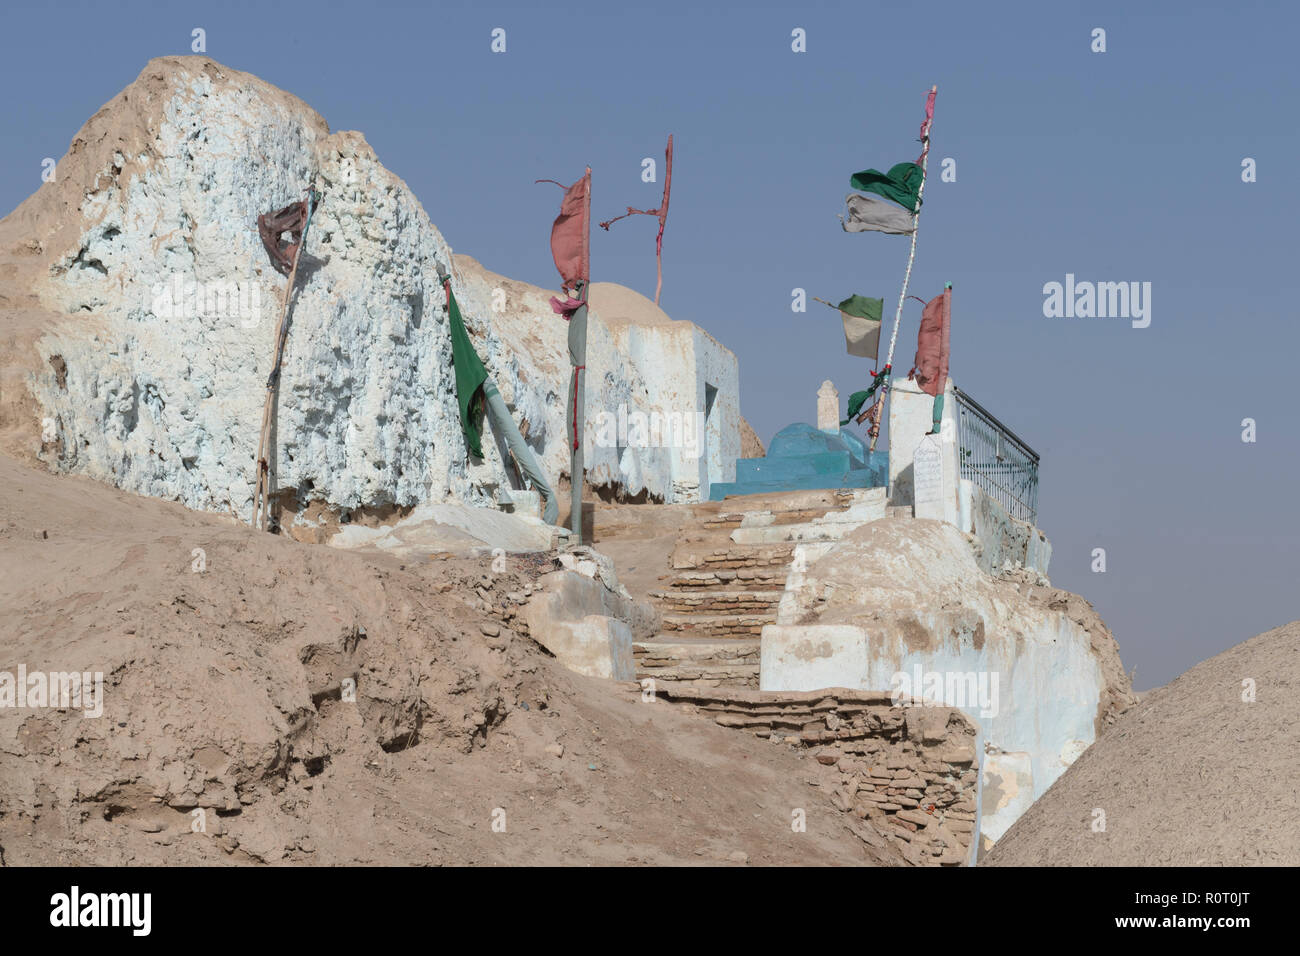 Sanctuaire soufi et tombe, l'ancienne ville de Balkh, au nord de l'Afghanistan Banque D'Images